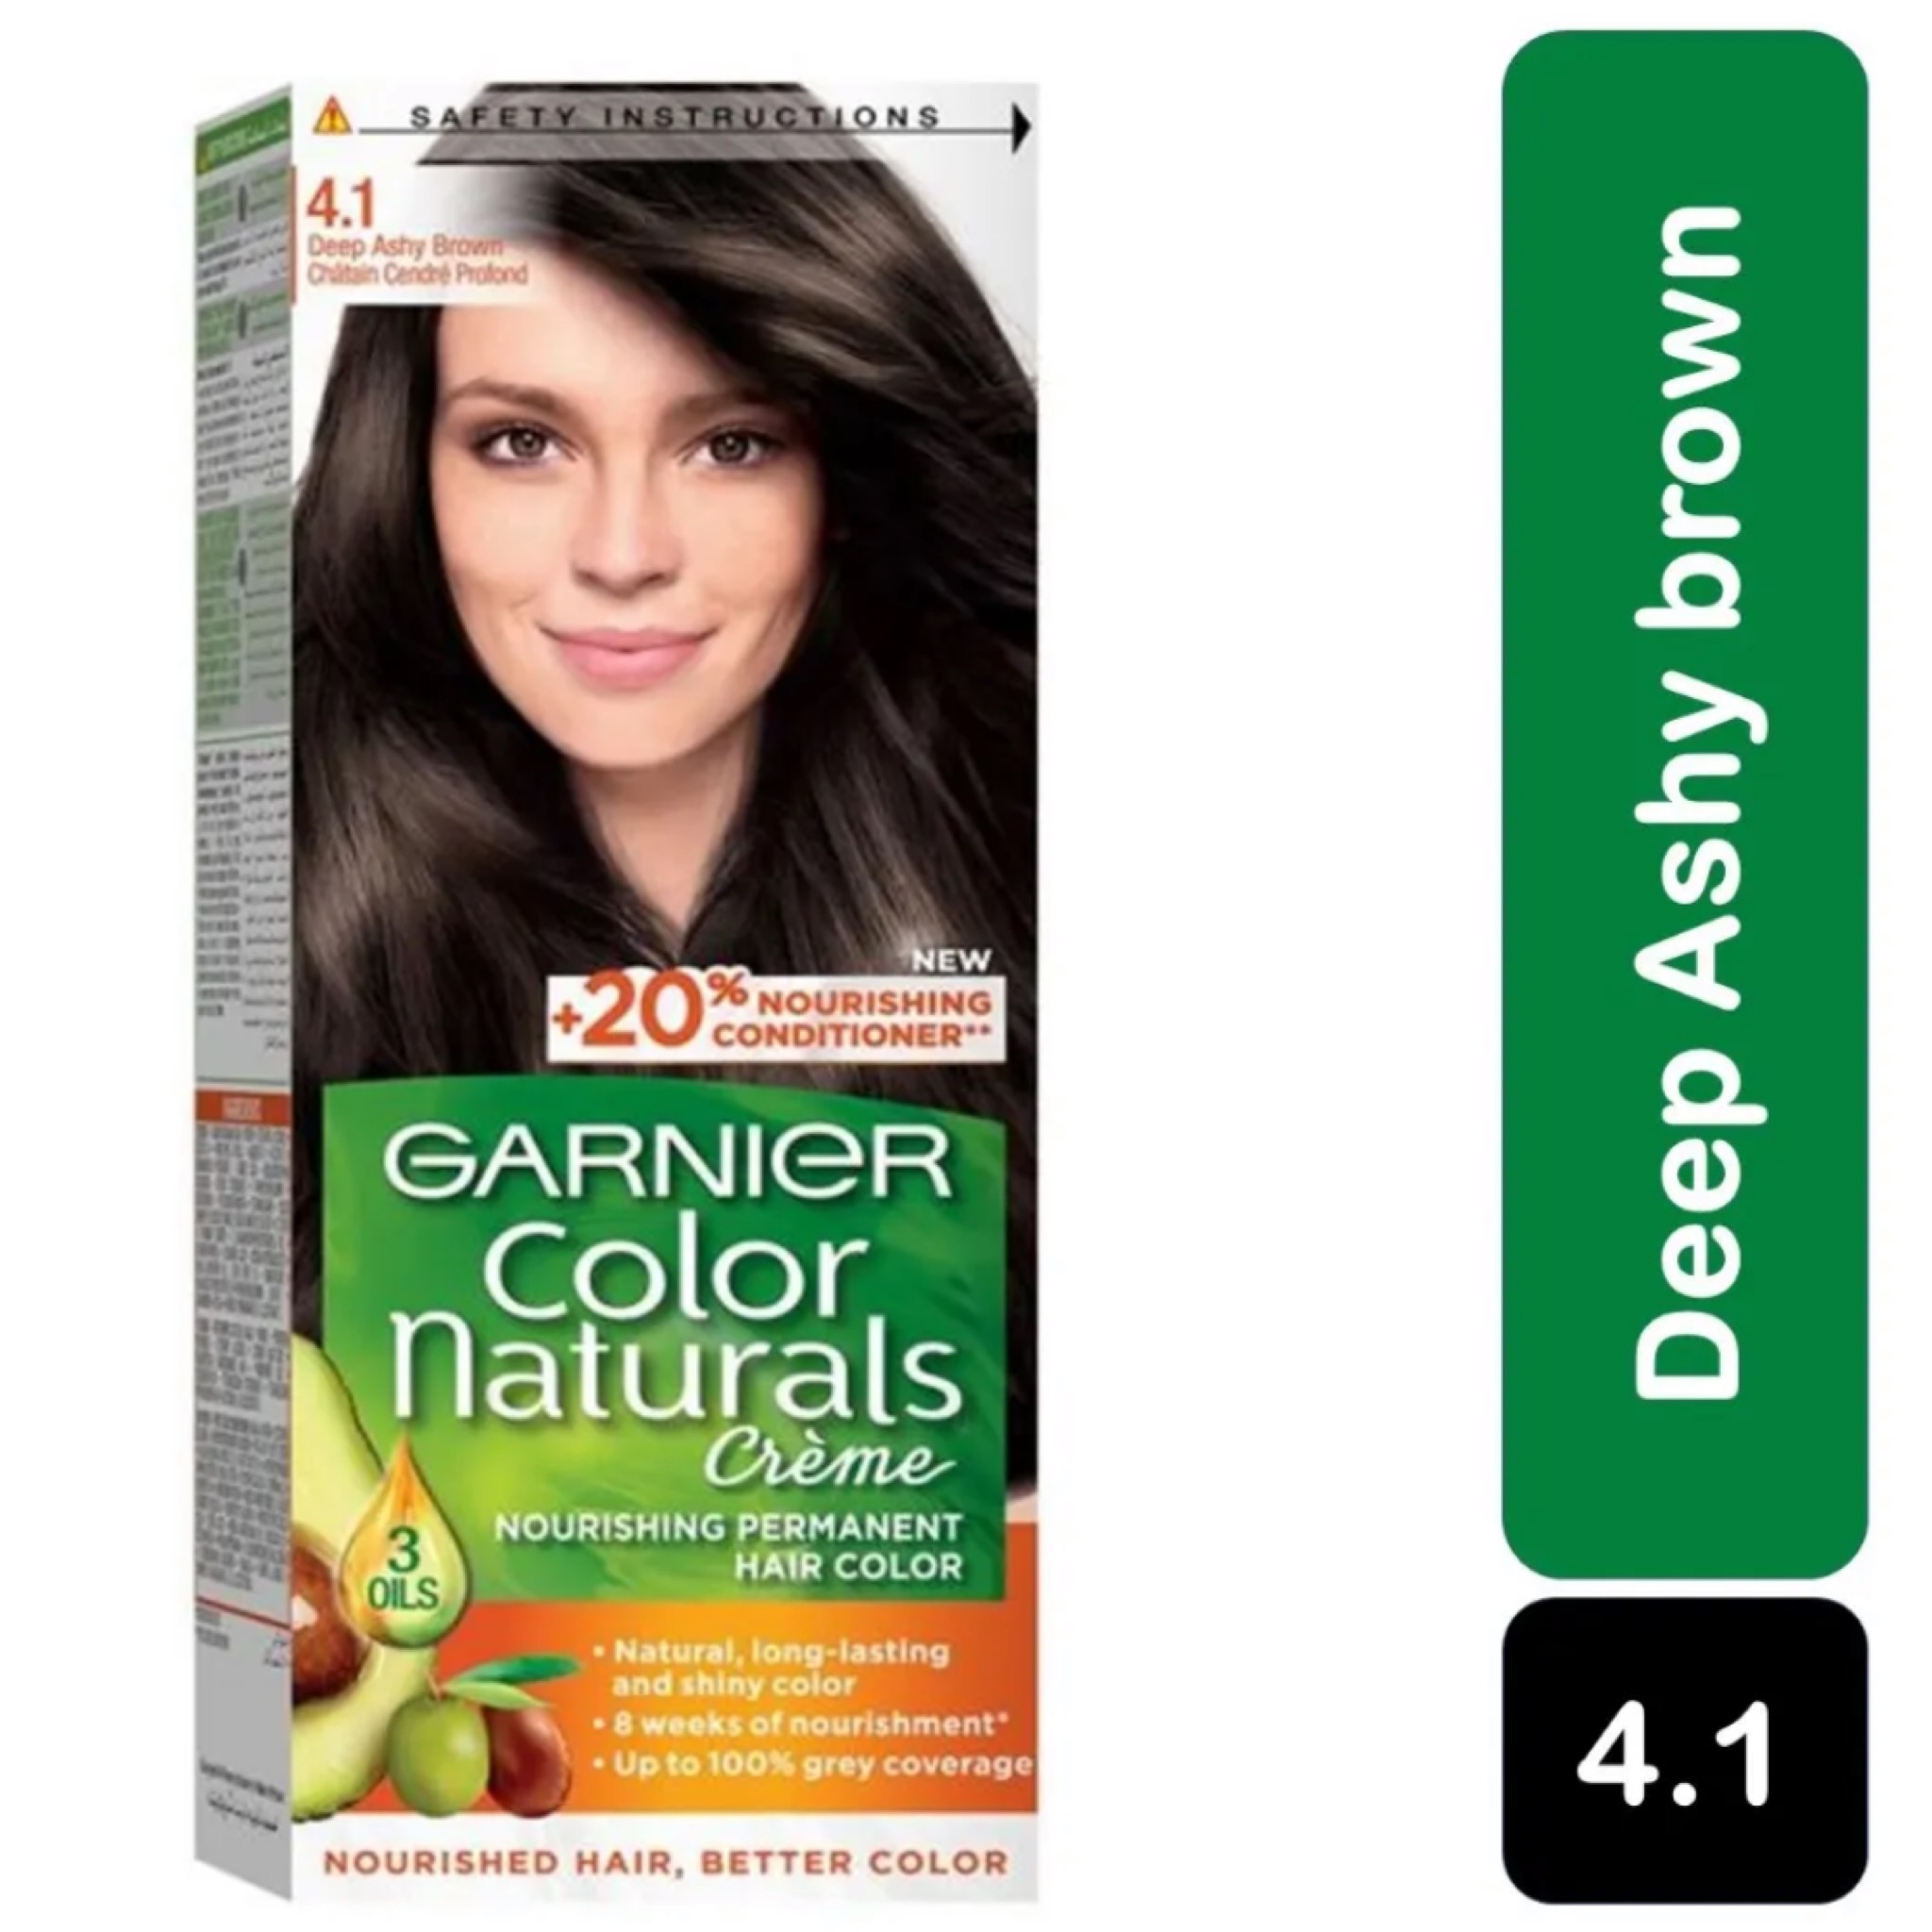 صبغة غارنيه بني رمادي مغذية وطبيعية للشعر 4.1 ( Garnier Color Naturals )